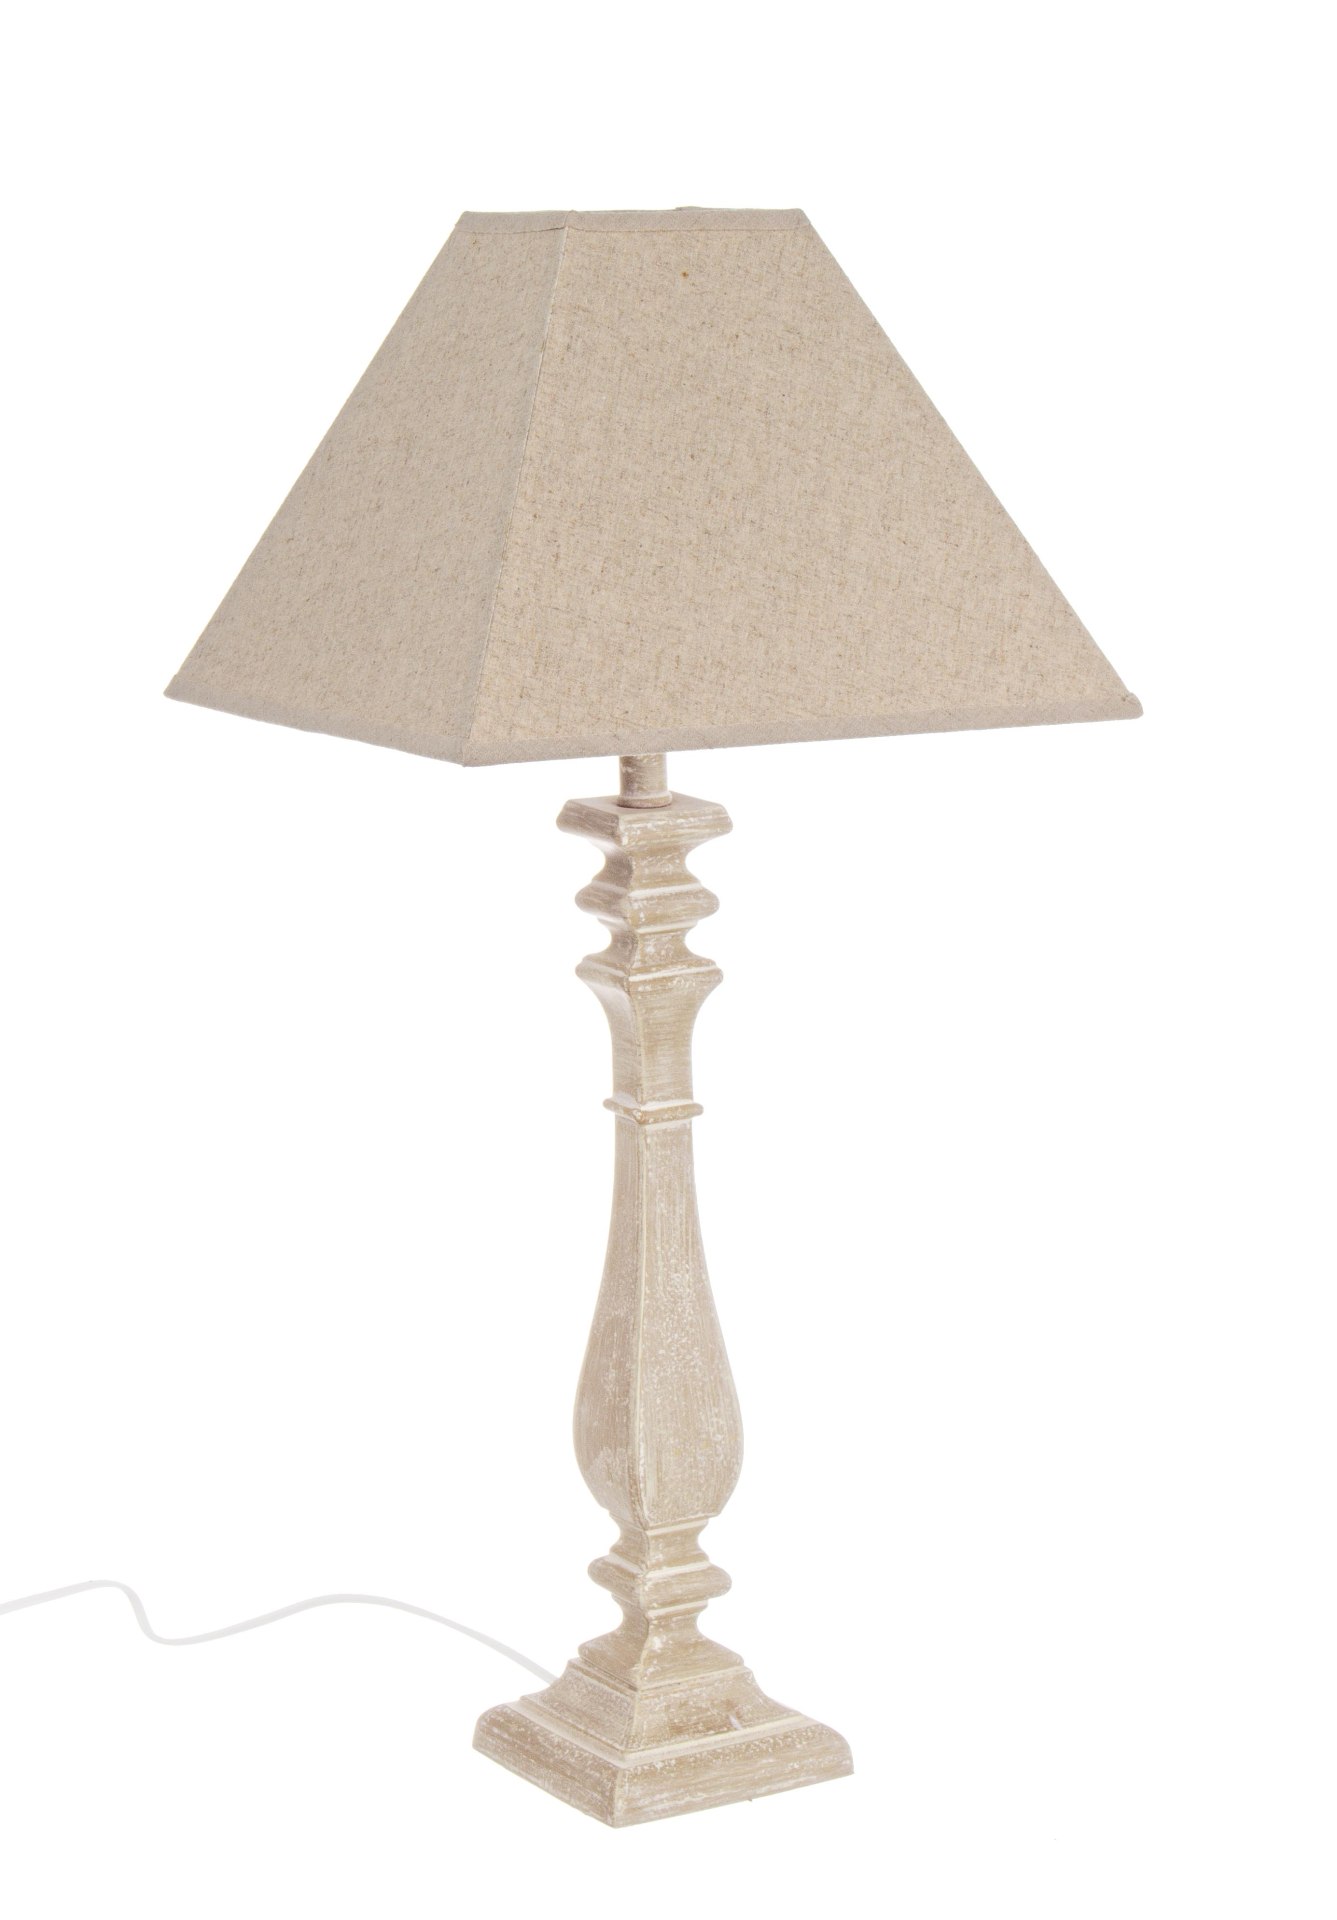 Die Tischleuchte Ajaccio überzeugt mit ihrem klassischen Design. Gefertigt wurde sie aus MDF, welches einen natürlichen Farbton besitzt. Der Lampenschirm ist aus Baumwolle und hat eine natürliche Farbe. Die Lampe besitzt eine Höhe von 52 cm.